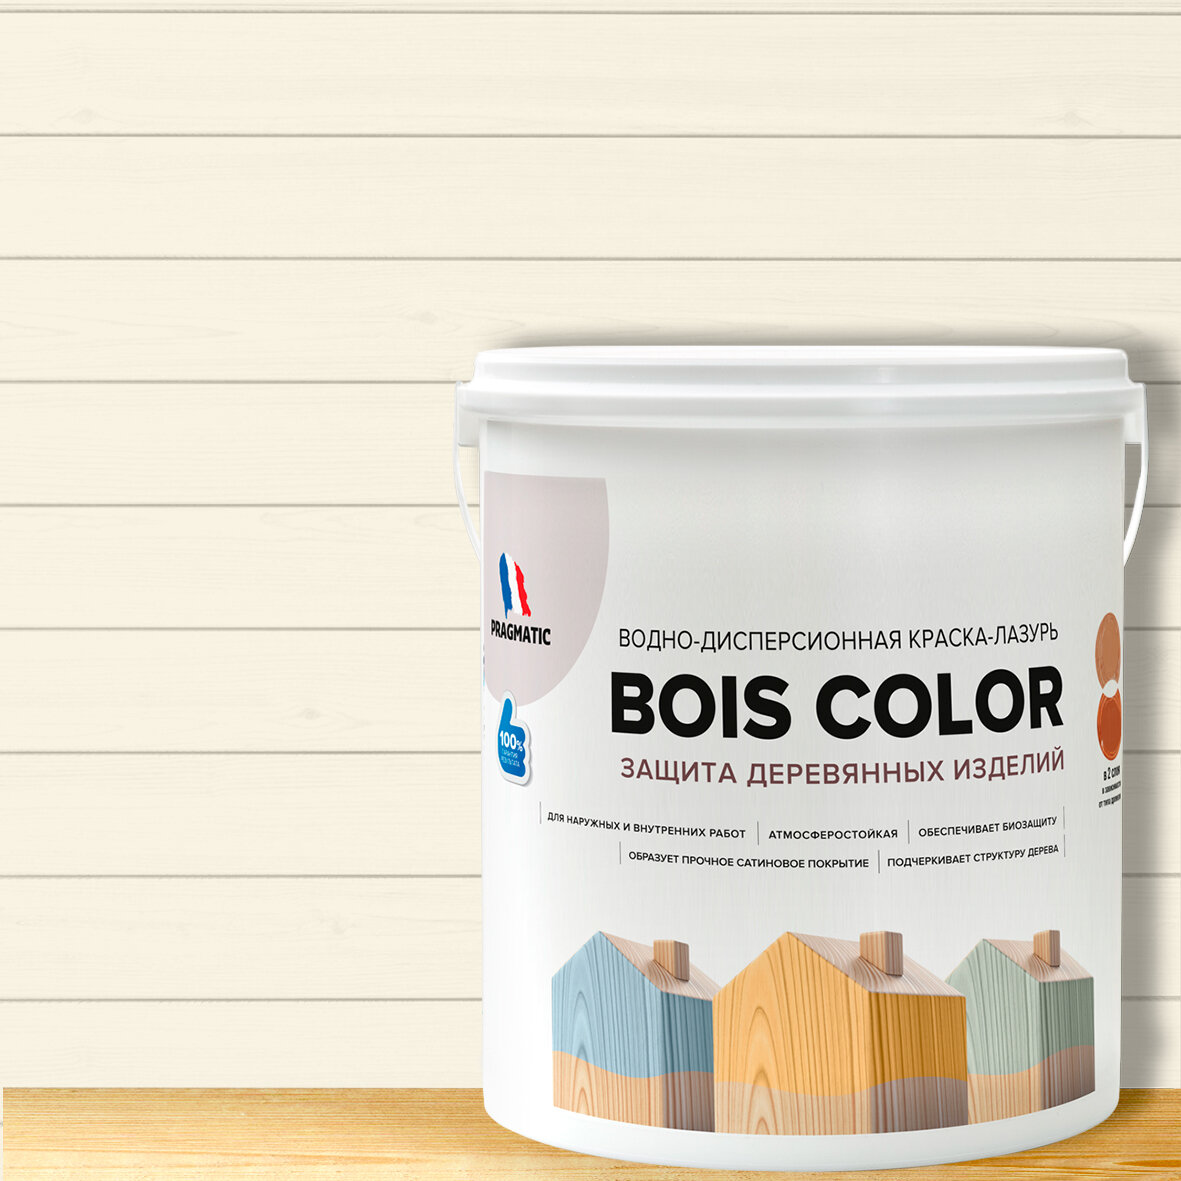 Краска (лазурь) для деревянных поверхностей и фасадов, обеспечивает биозащиту, защищает от плесени, грибков, атмосферостойкая, водоотталкивающая BOIS COLOR 0,9 л цвет Кремовый OW 126